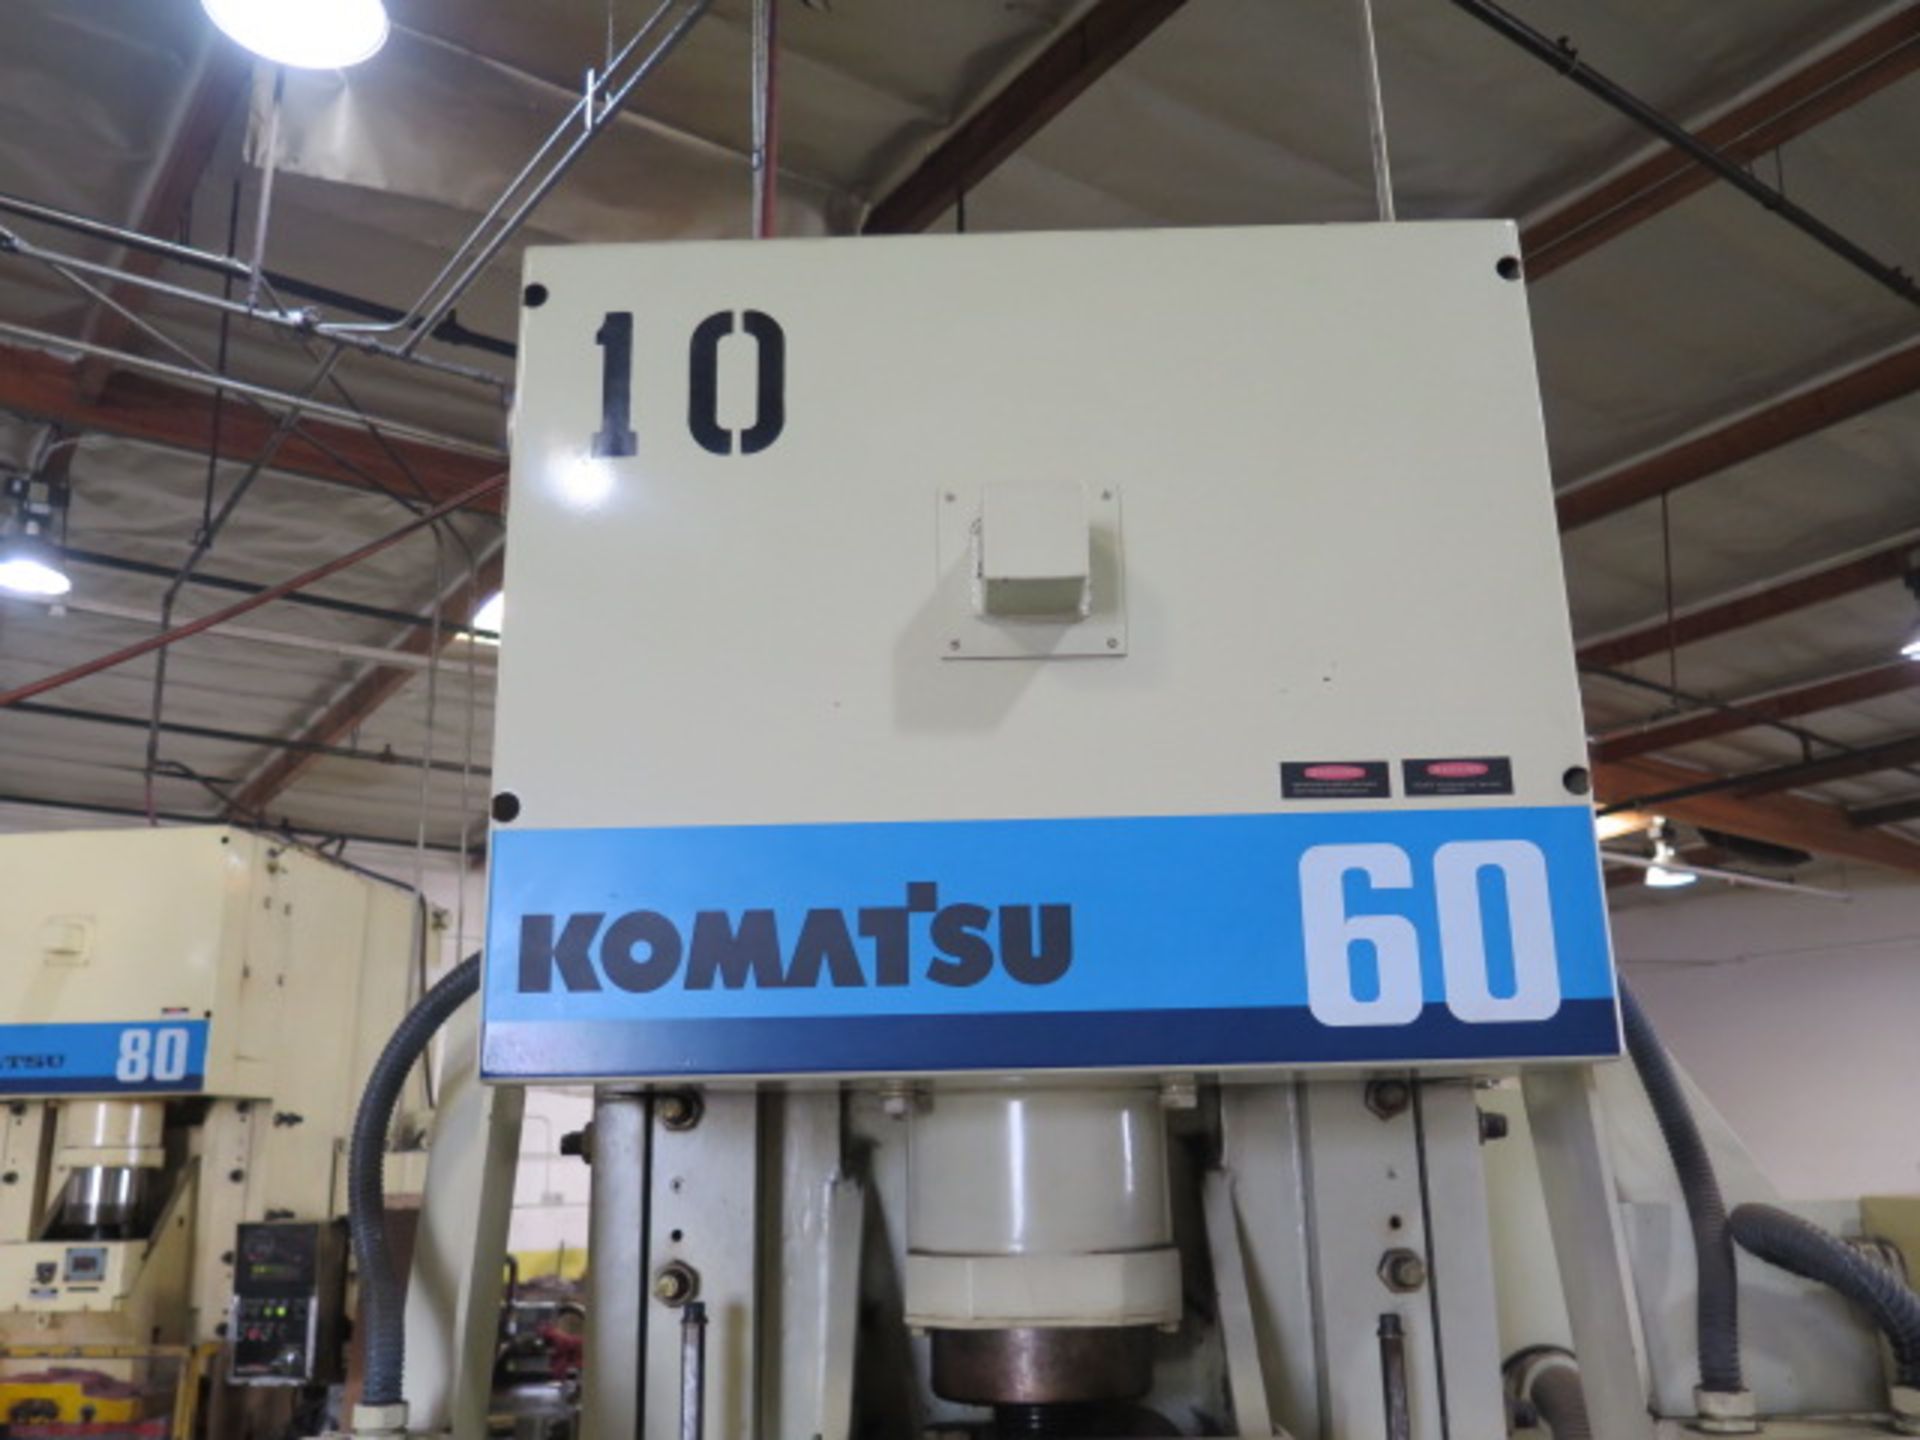 1995 Komatsu OBS 60H-VS-# 60 Ton Gap Frame Press s/n D0040 w/Komatsu Controls, 75-150 SPM,SOLD AS IS - Image 4 of 18